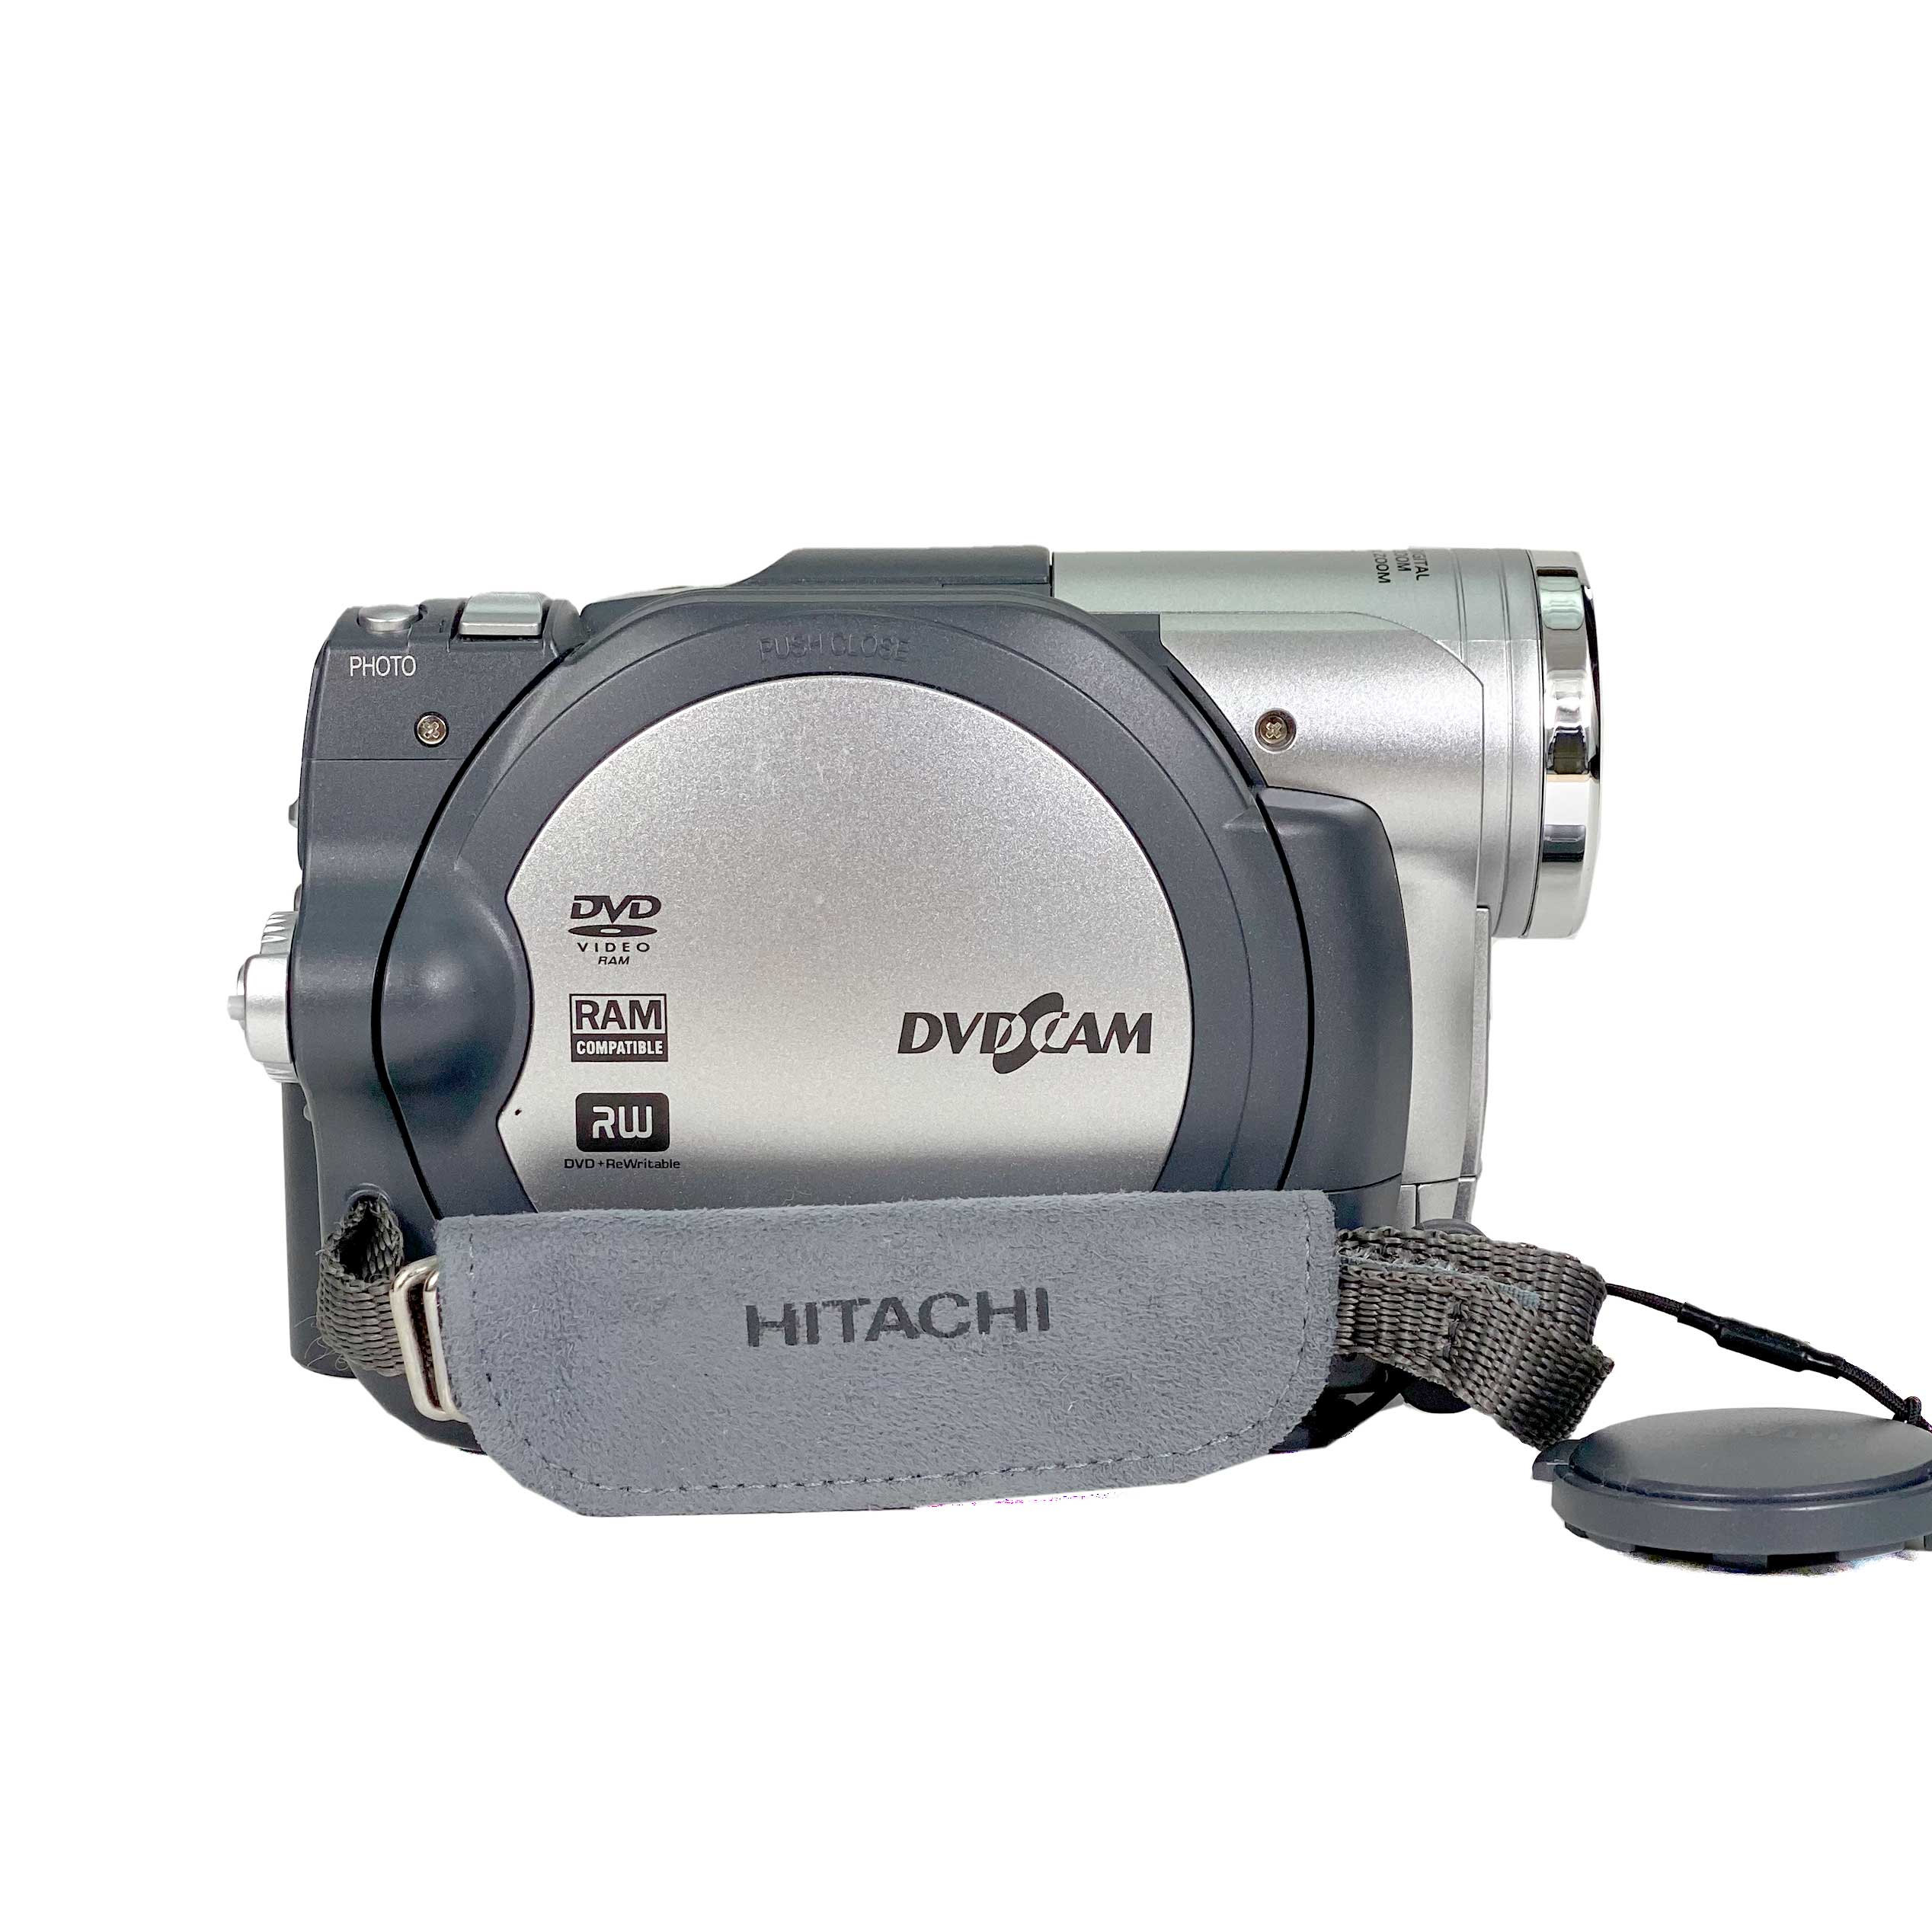 Hitachi DVD Camcorder